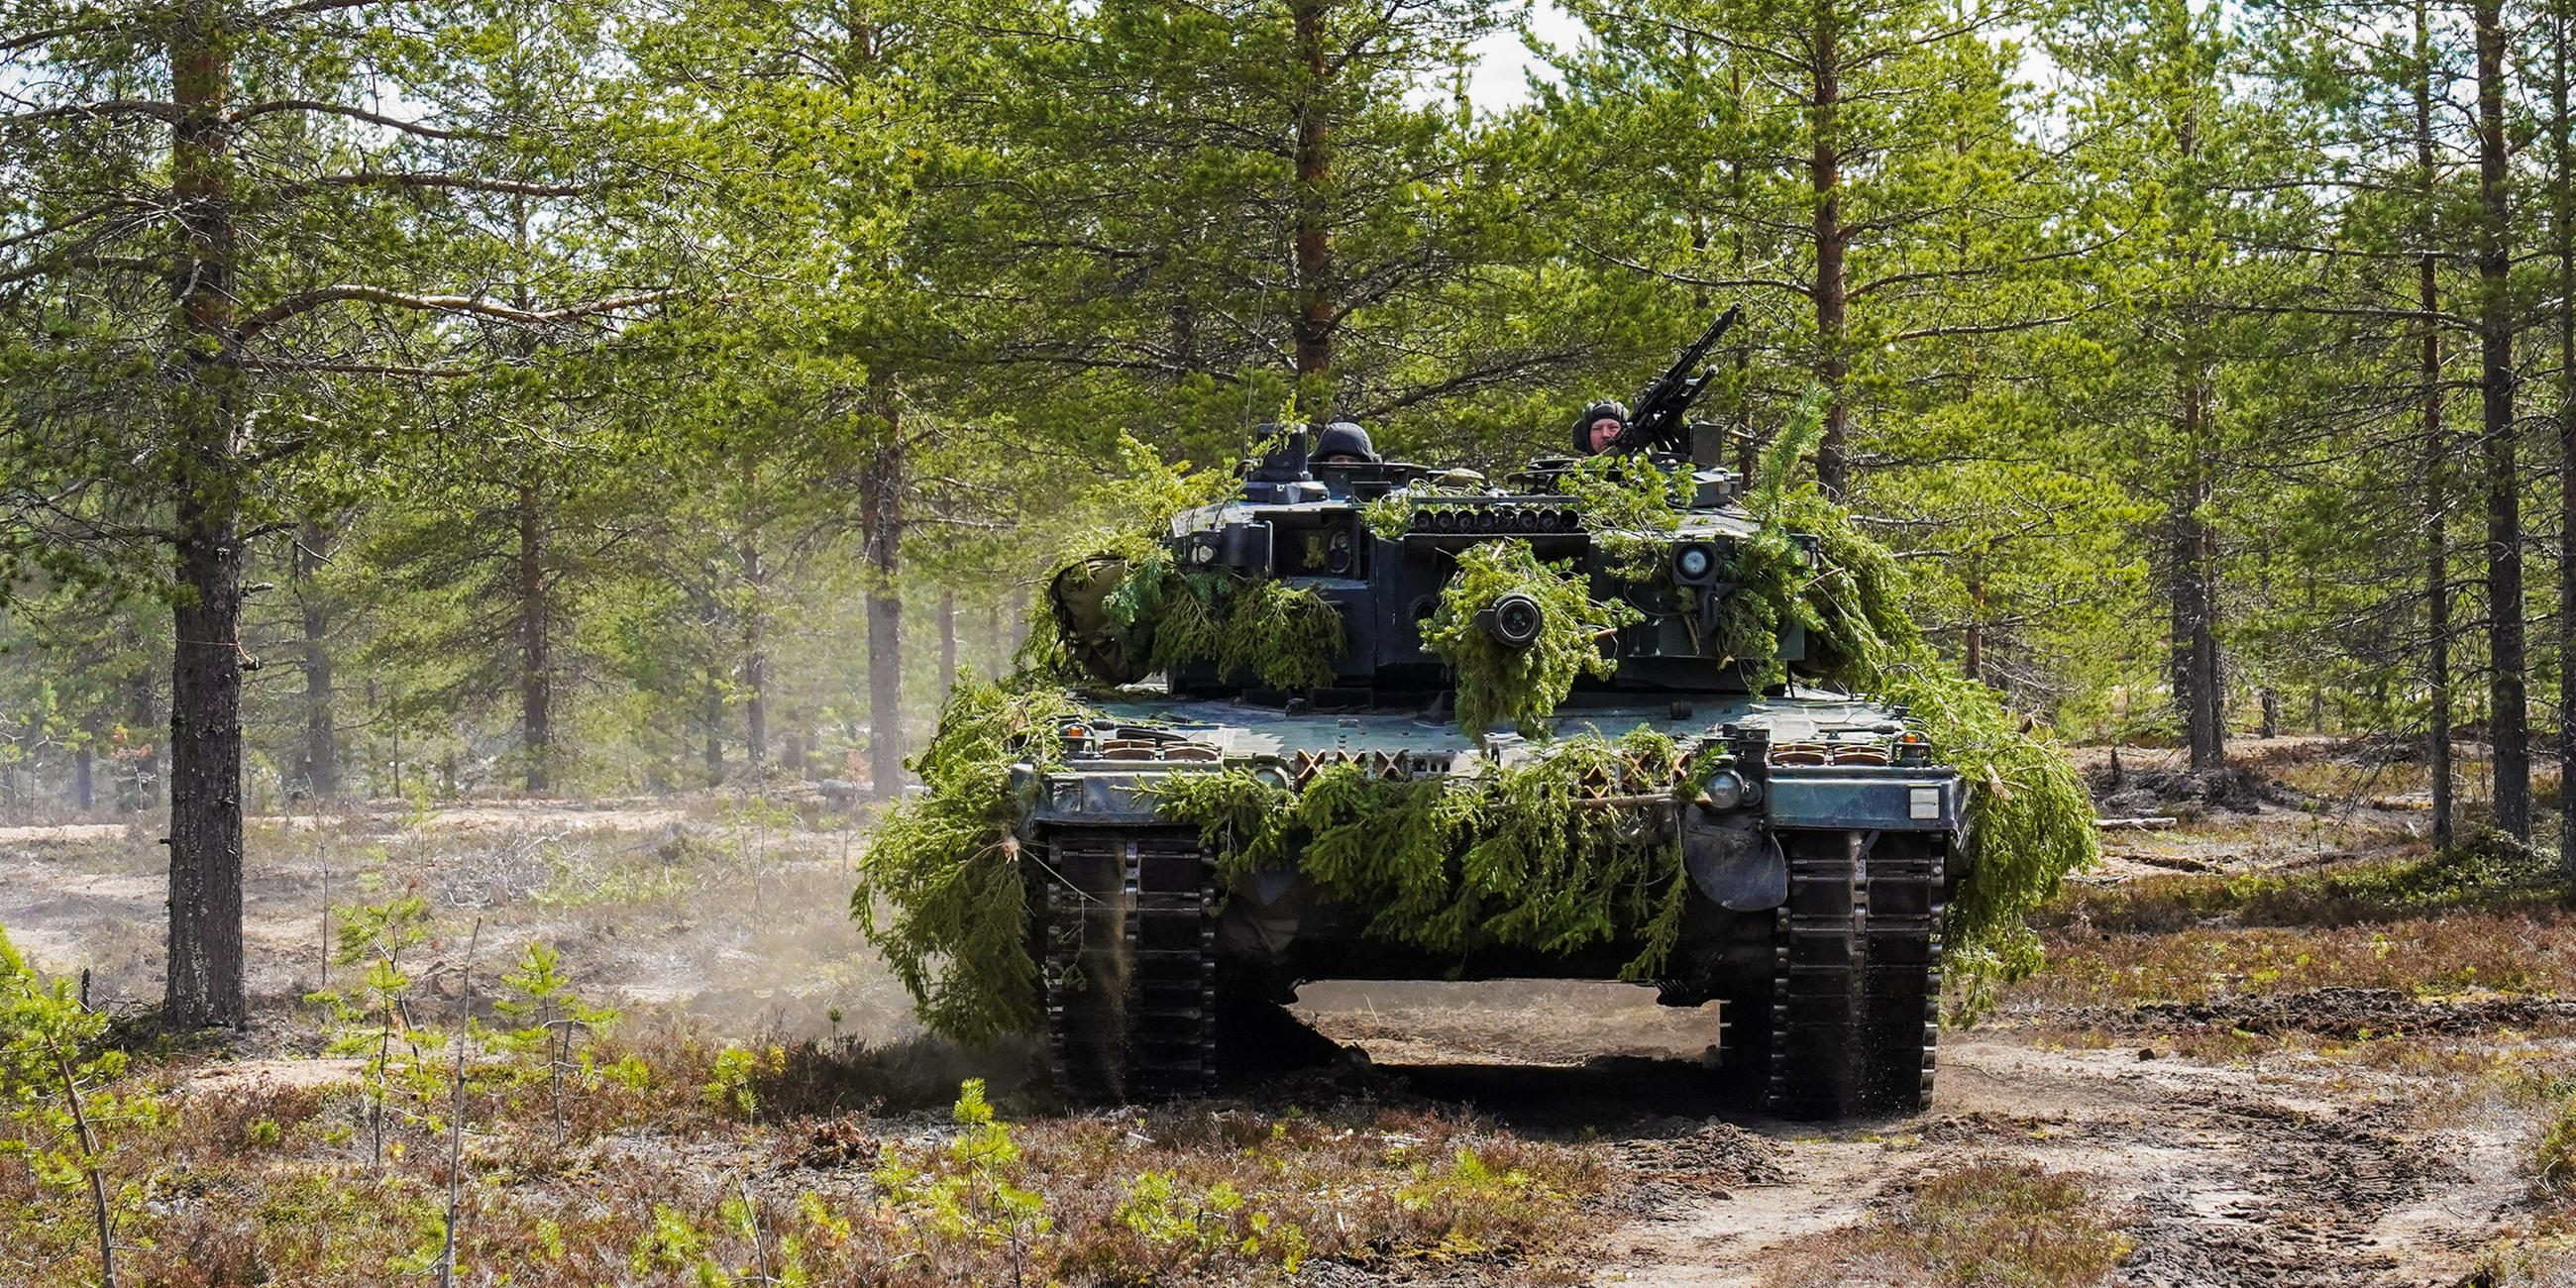 Der Kampfpanzer Leopard 2 getarnt mit Zweigen in einem lichten, sonnendurchfluteten Kiefernwald